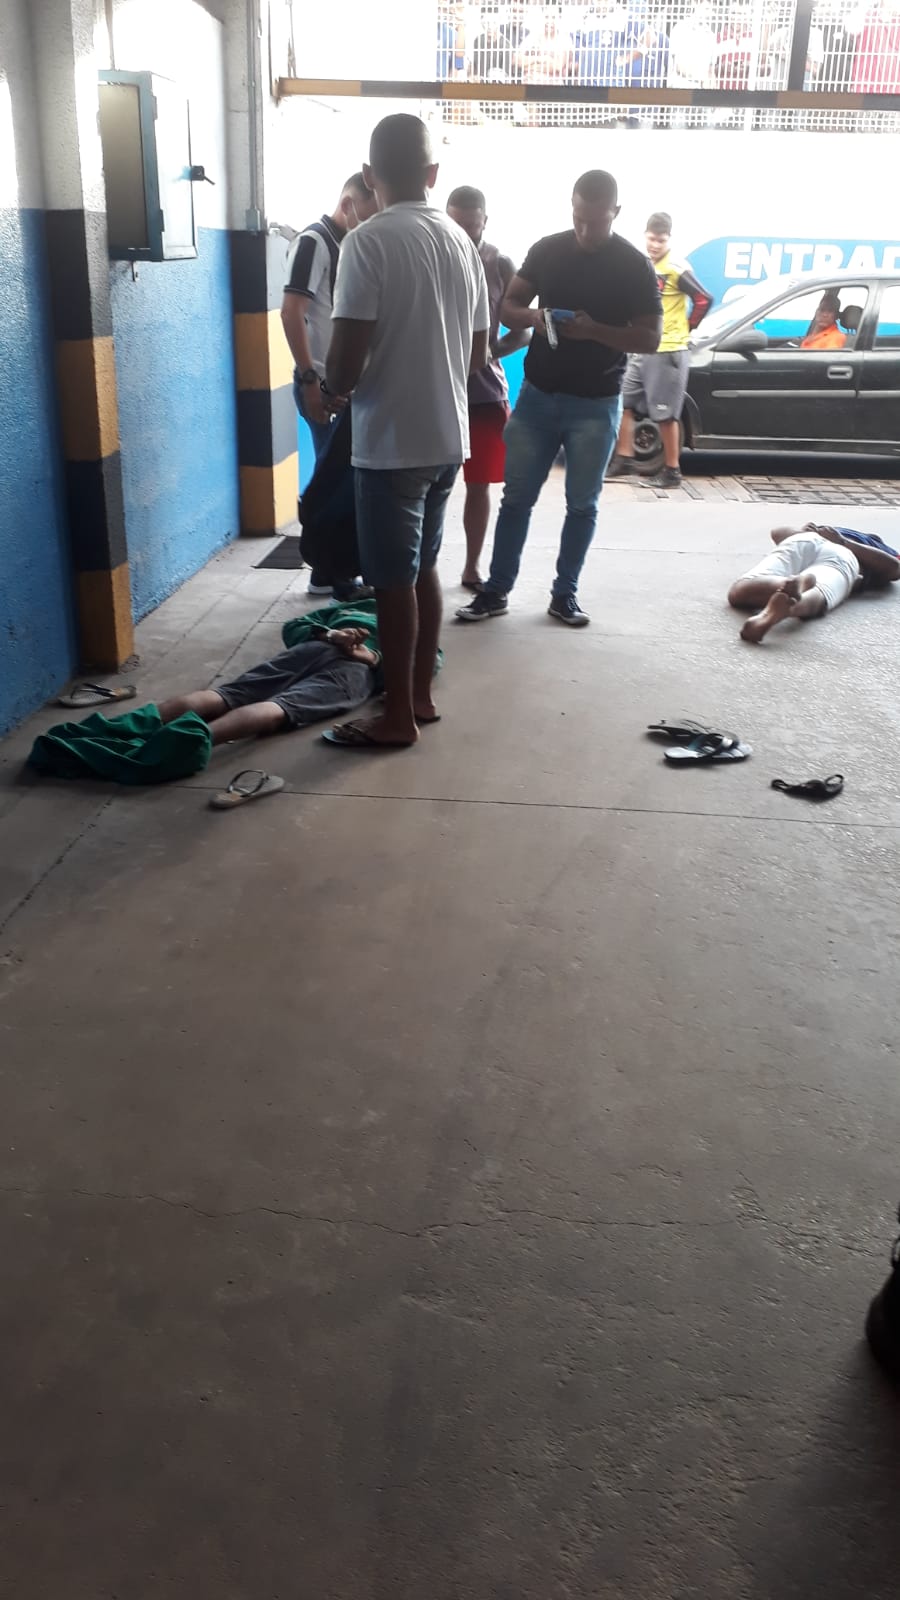 Dupla é presa durante tentativa de sequestro em estacionamento de supermercado em São Luís Os suspeitos foram detidos durante a intervenção de dois policias militares que estavam de folga.